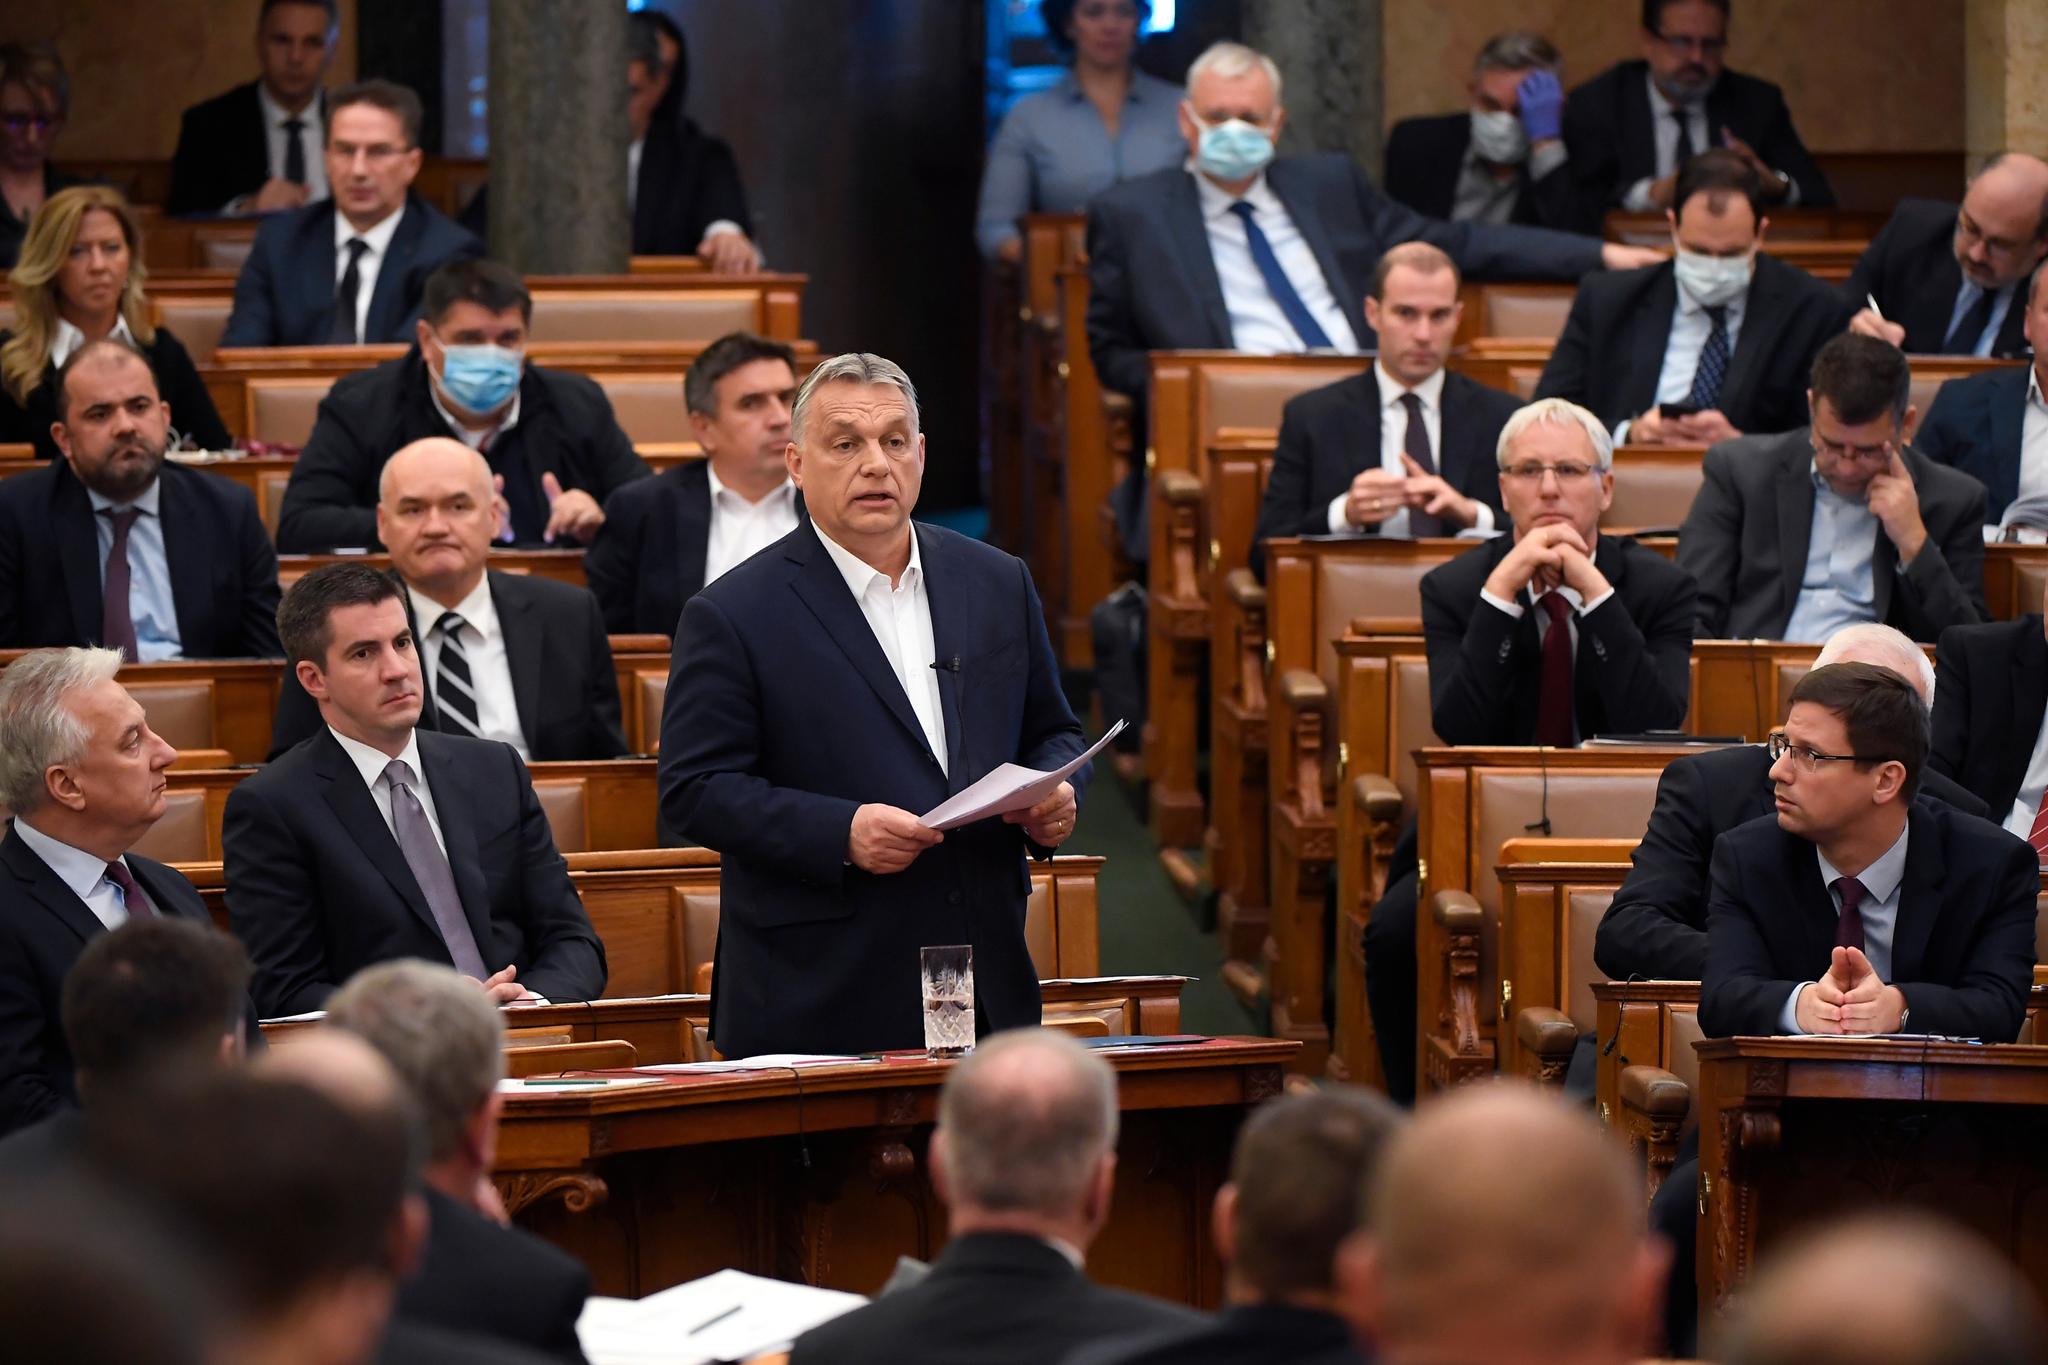 Ungarns president Viktor Orbán ba nasjonalforsamlingen gi ham svært vide fullmakter uten tidsbegrensning. 